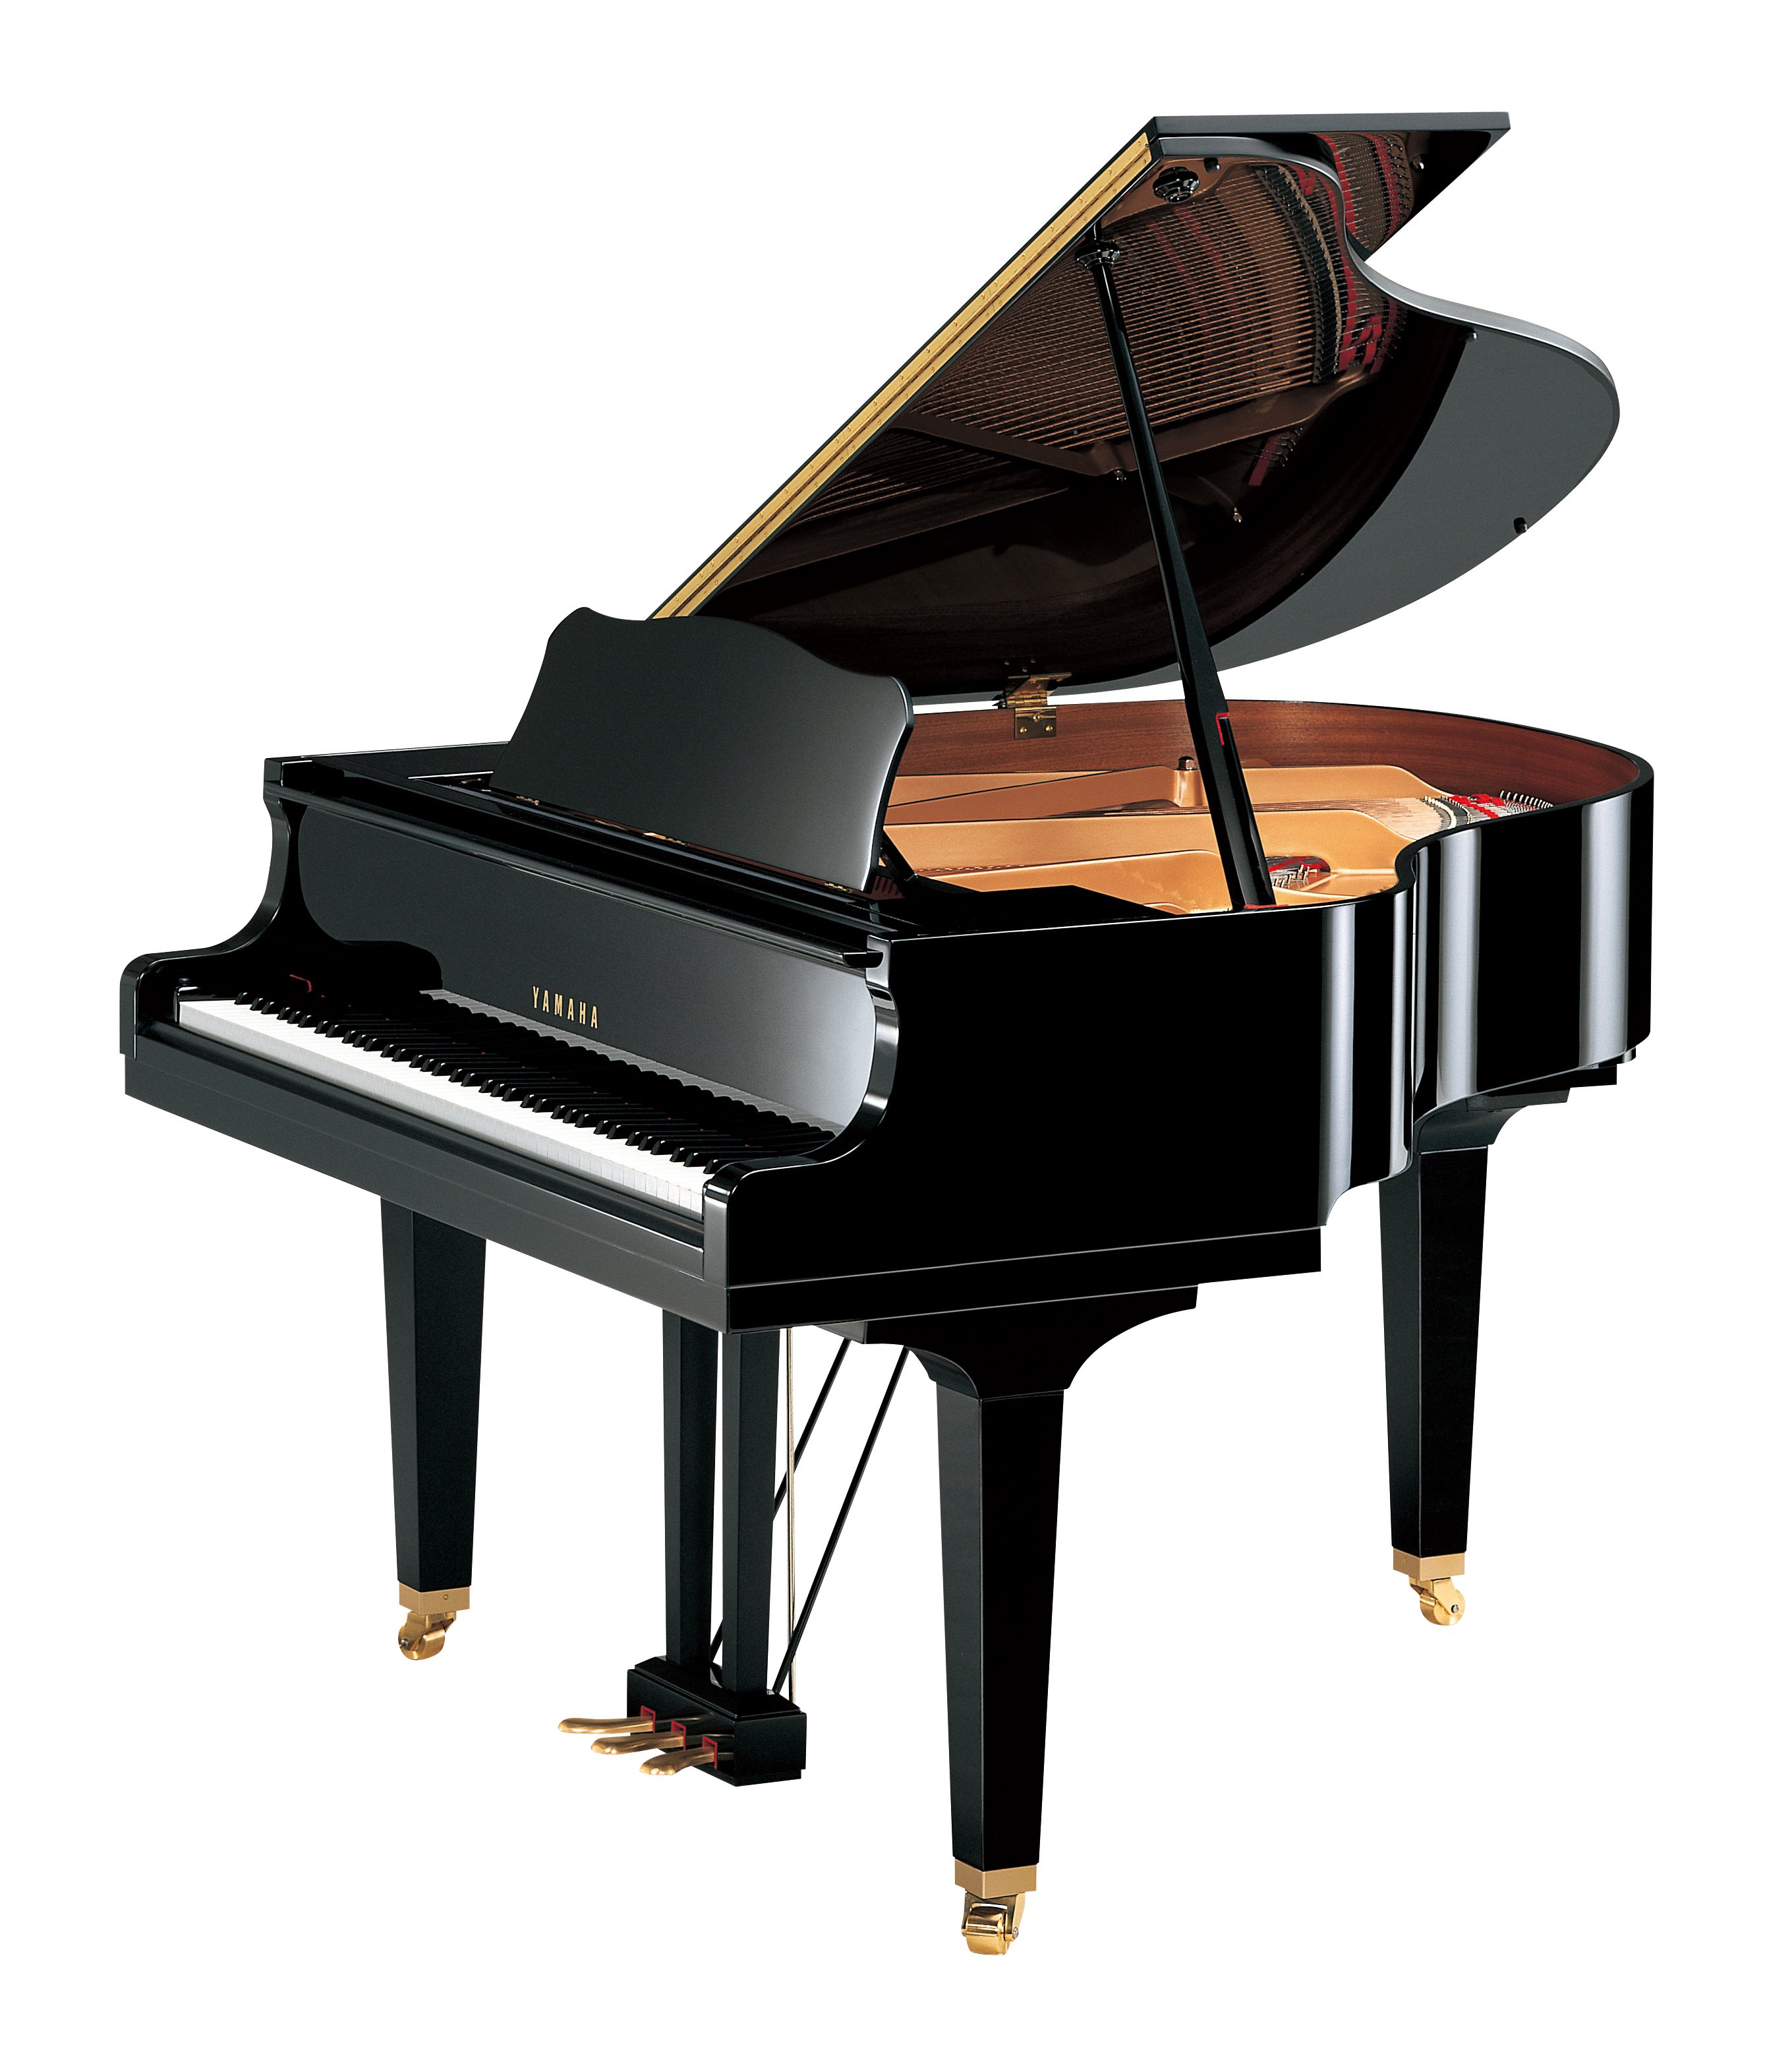 KAWAI K2 UPRIGHT PIANO - pianocity.my